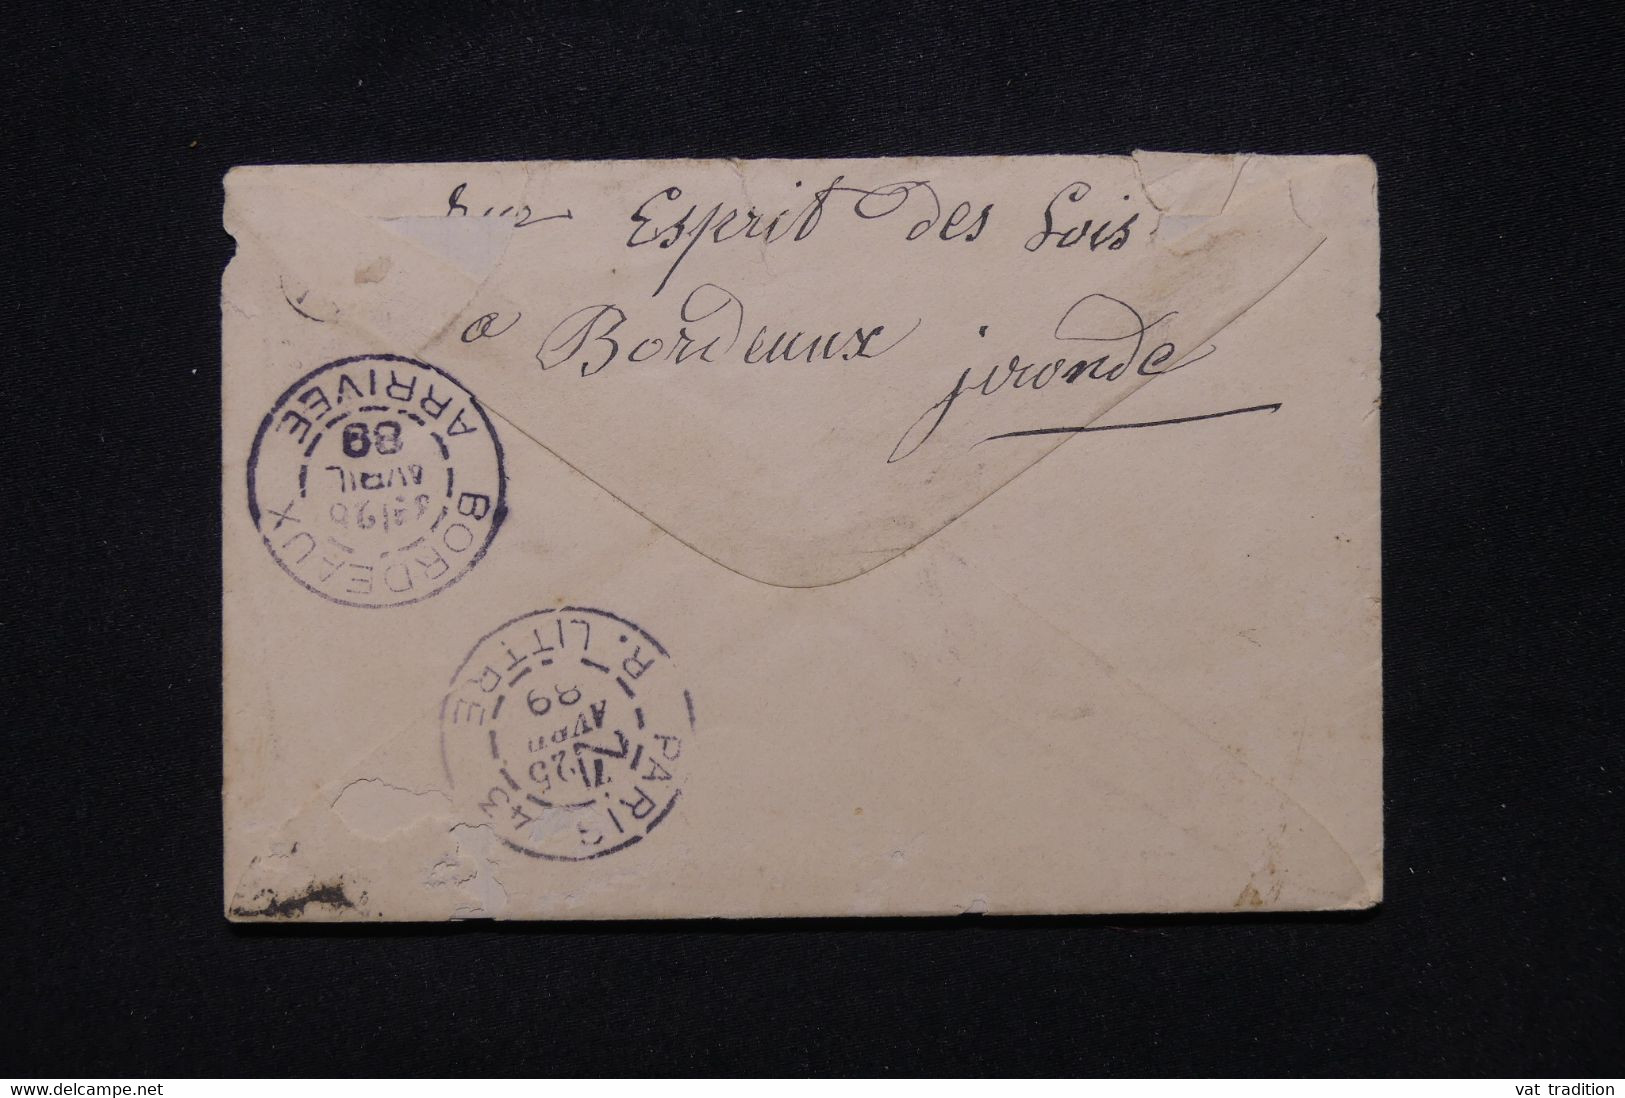 PORTUGAL - Enveloppe De Lisbonne Pour La France En 1889 - L 107957 - Lettres & Documents